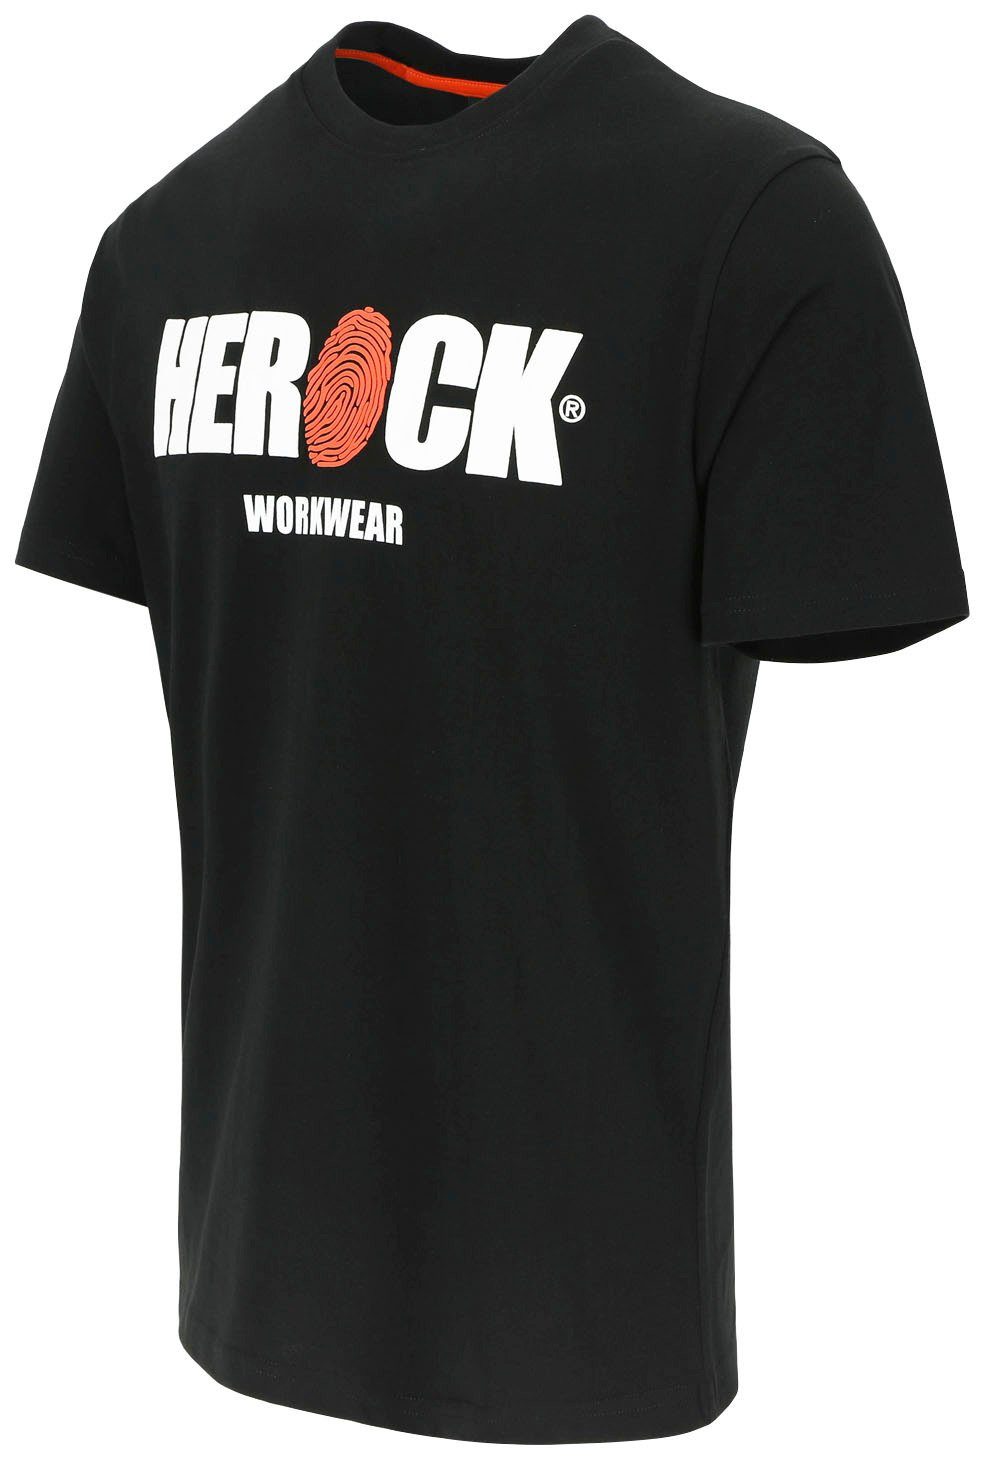 Baumwolle, mit Herock®-Aufdruck, Herock Tragegefühl angenehmes Rundhals, T-Shirt ENI schwarz